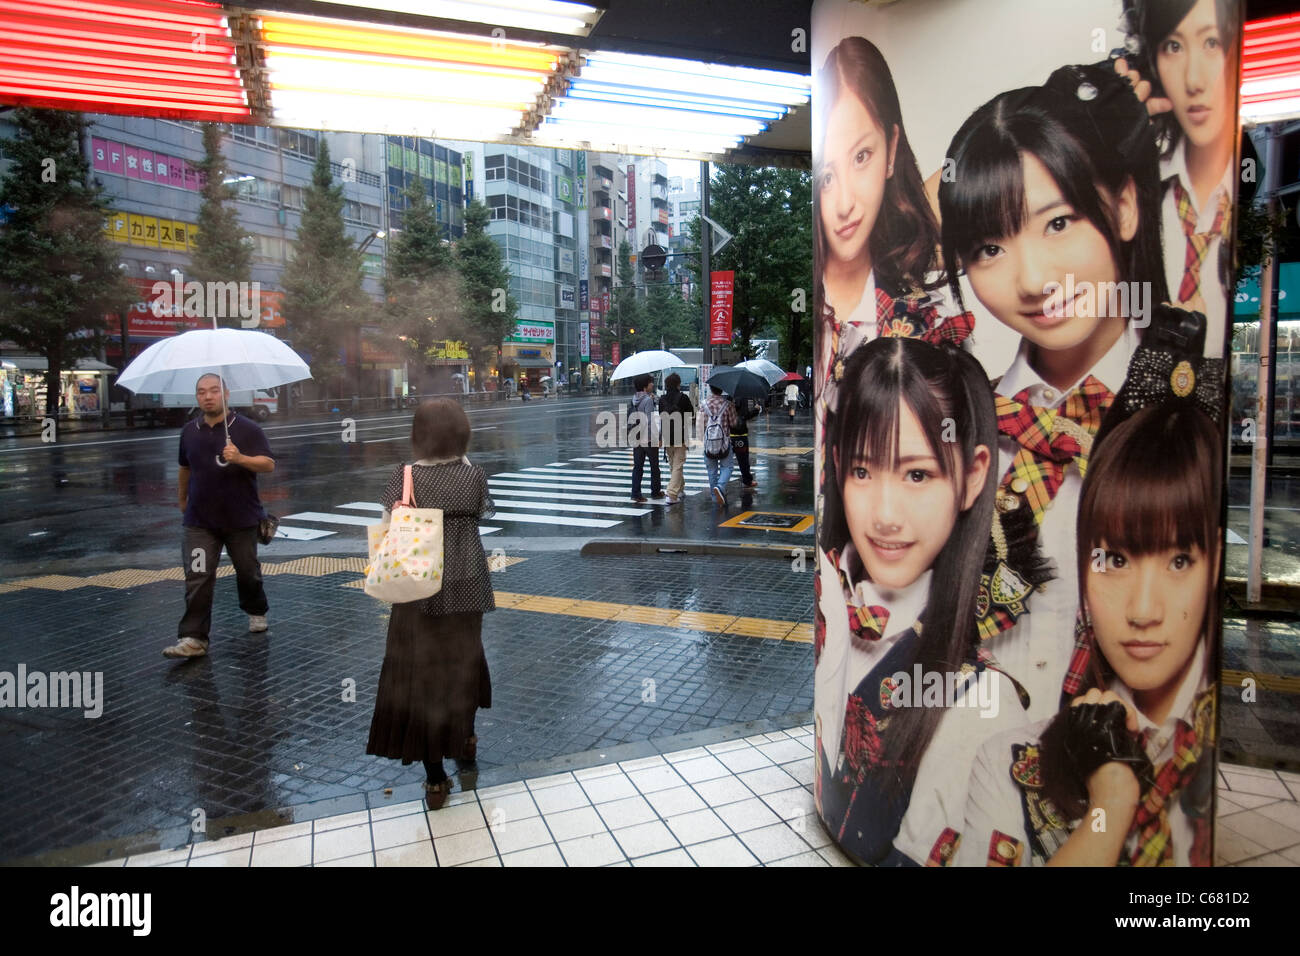 Immagine di giovani ragazze a un cosplay, anime, manga e giochi di ruolo in negozio di Akihabara, Tokyo, Giappone. Foto Stock